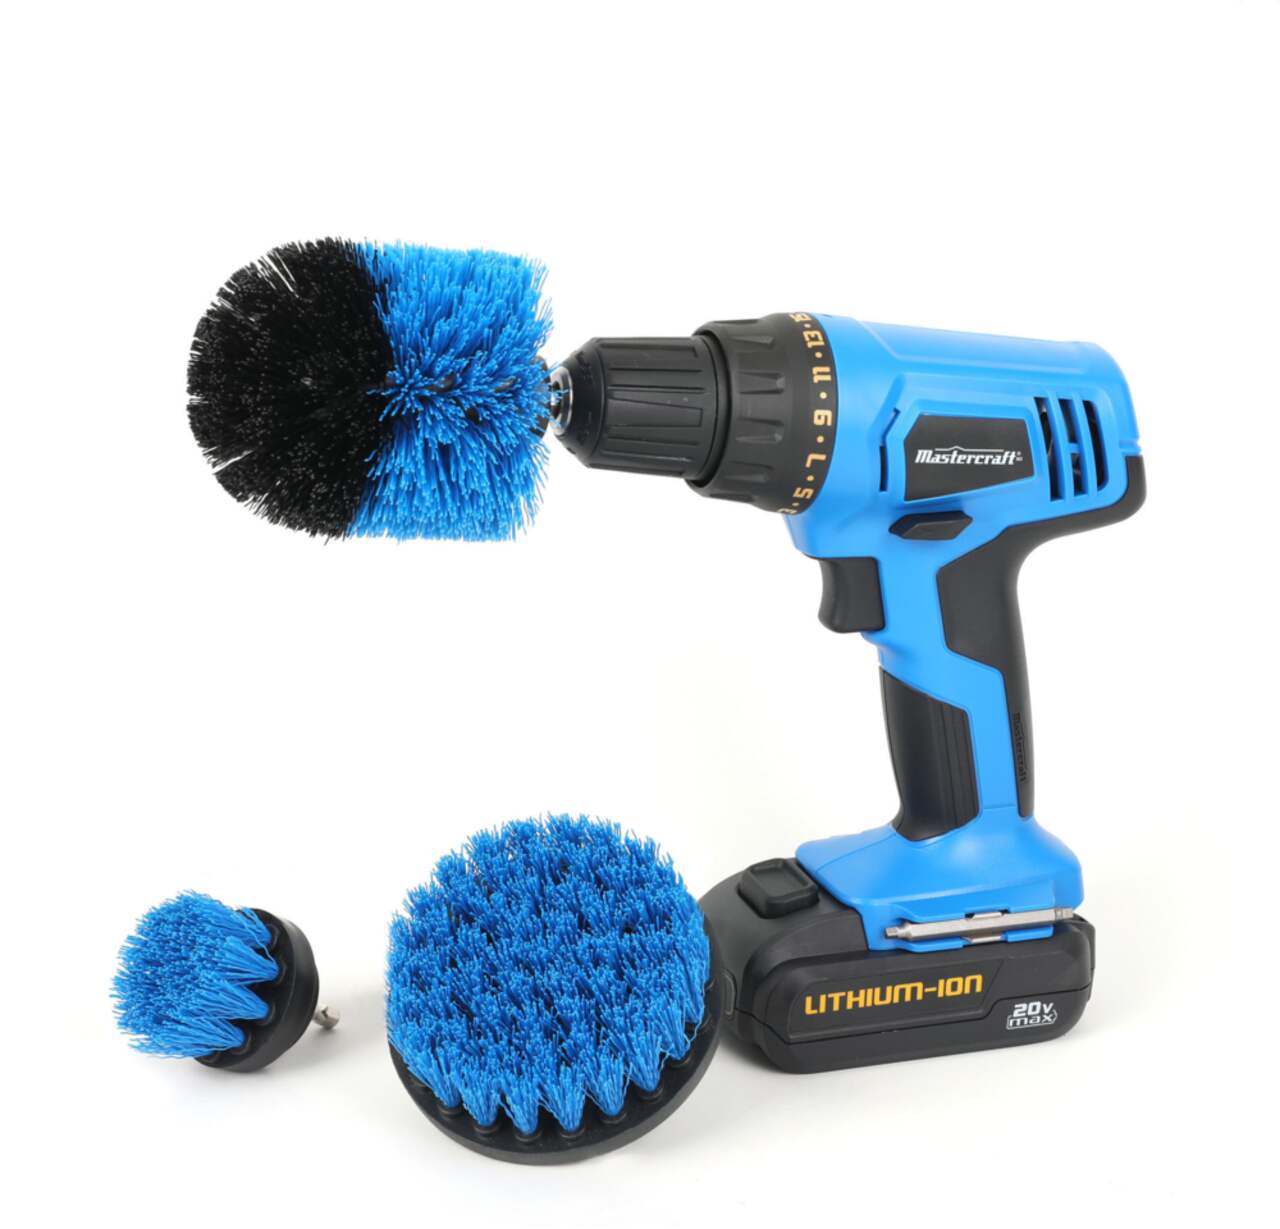 Drillbrush Carpet Cleaner, Car Cleaning Brush Kit, Grill Brush